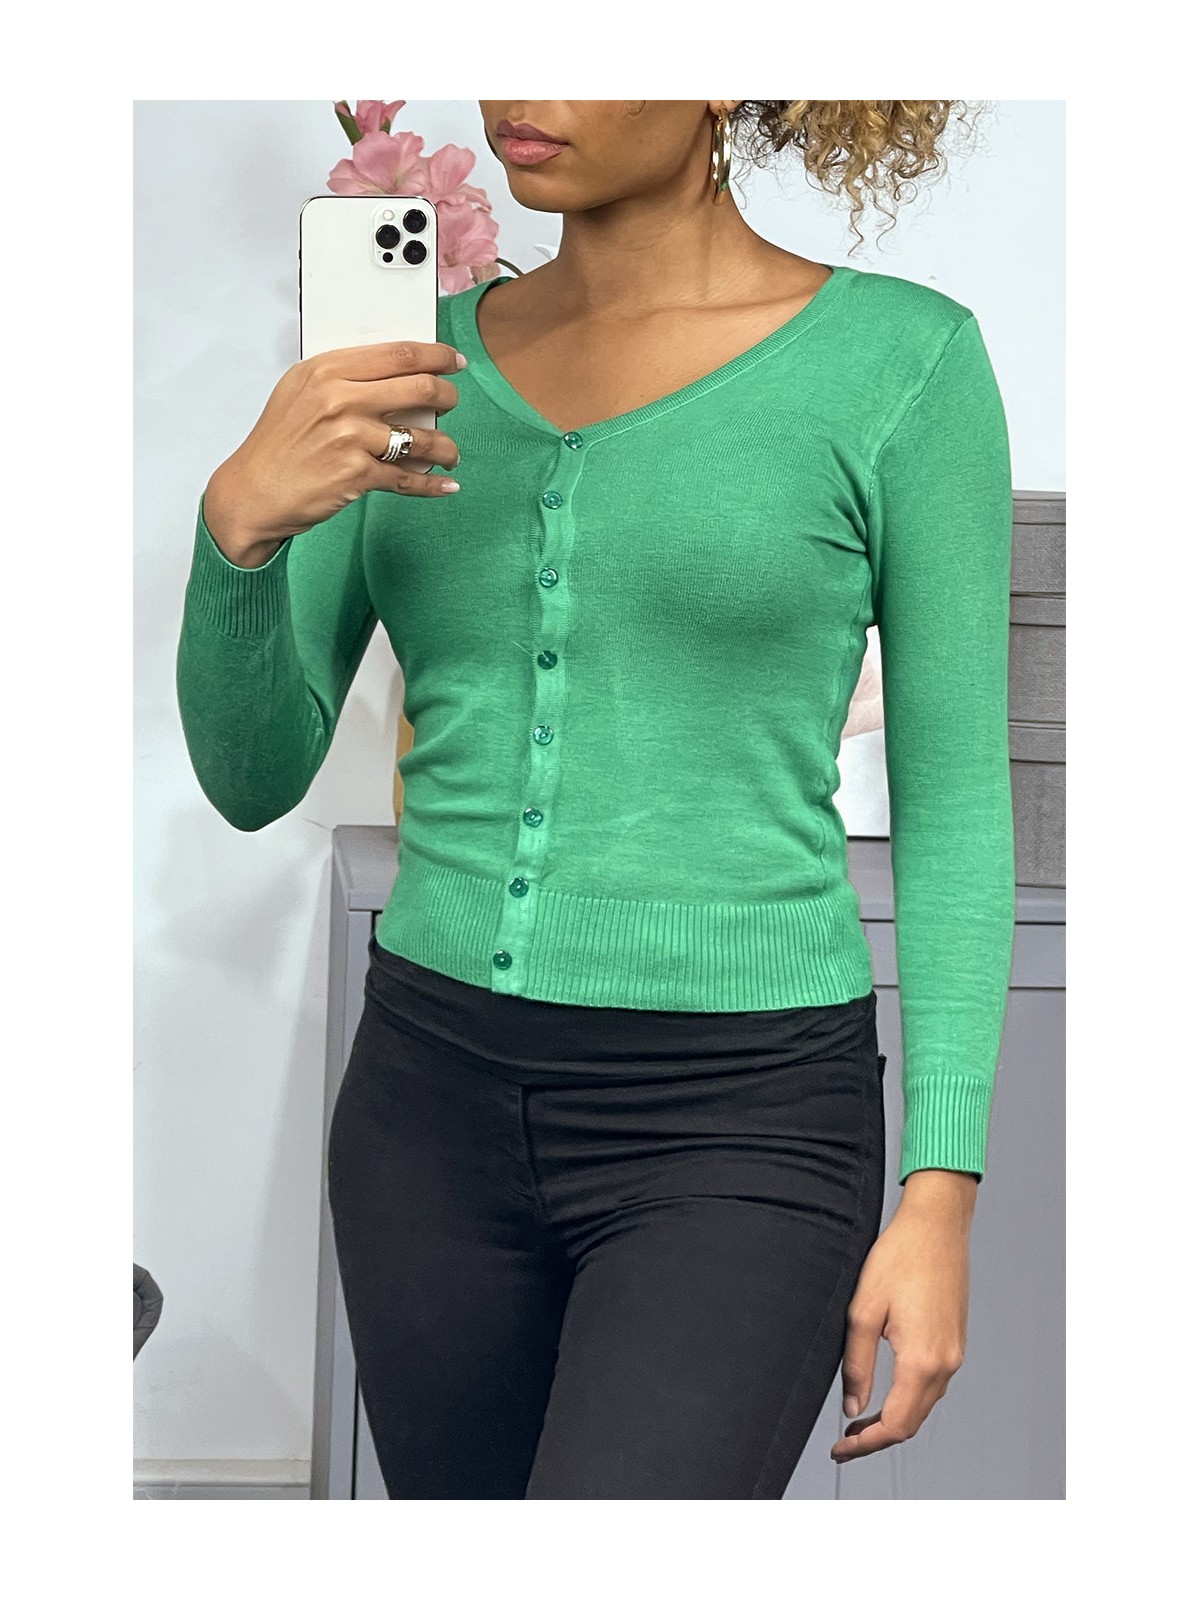 Gilet vert clair en maille tricot très extensible, l'incontournable classique - 3